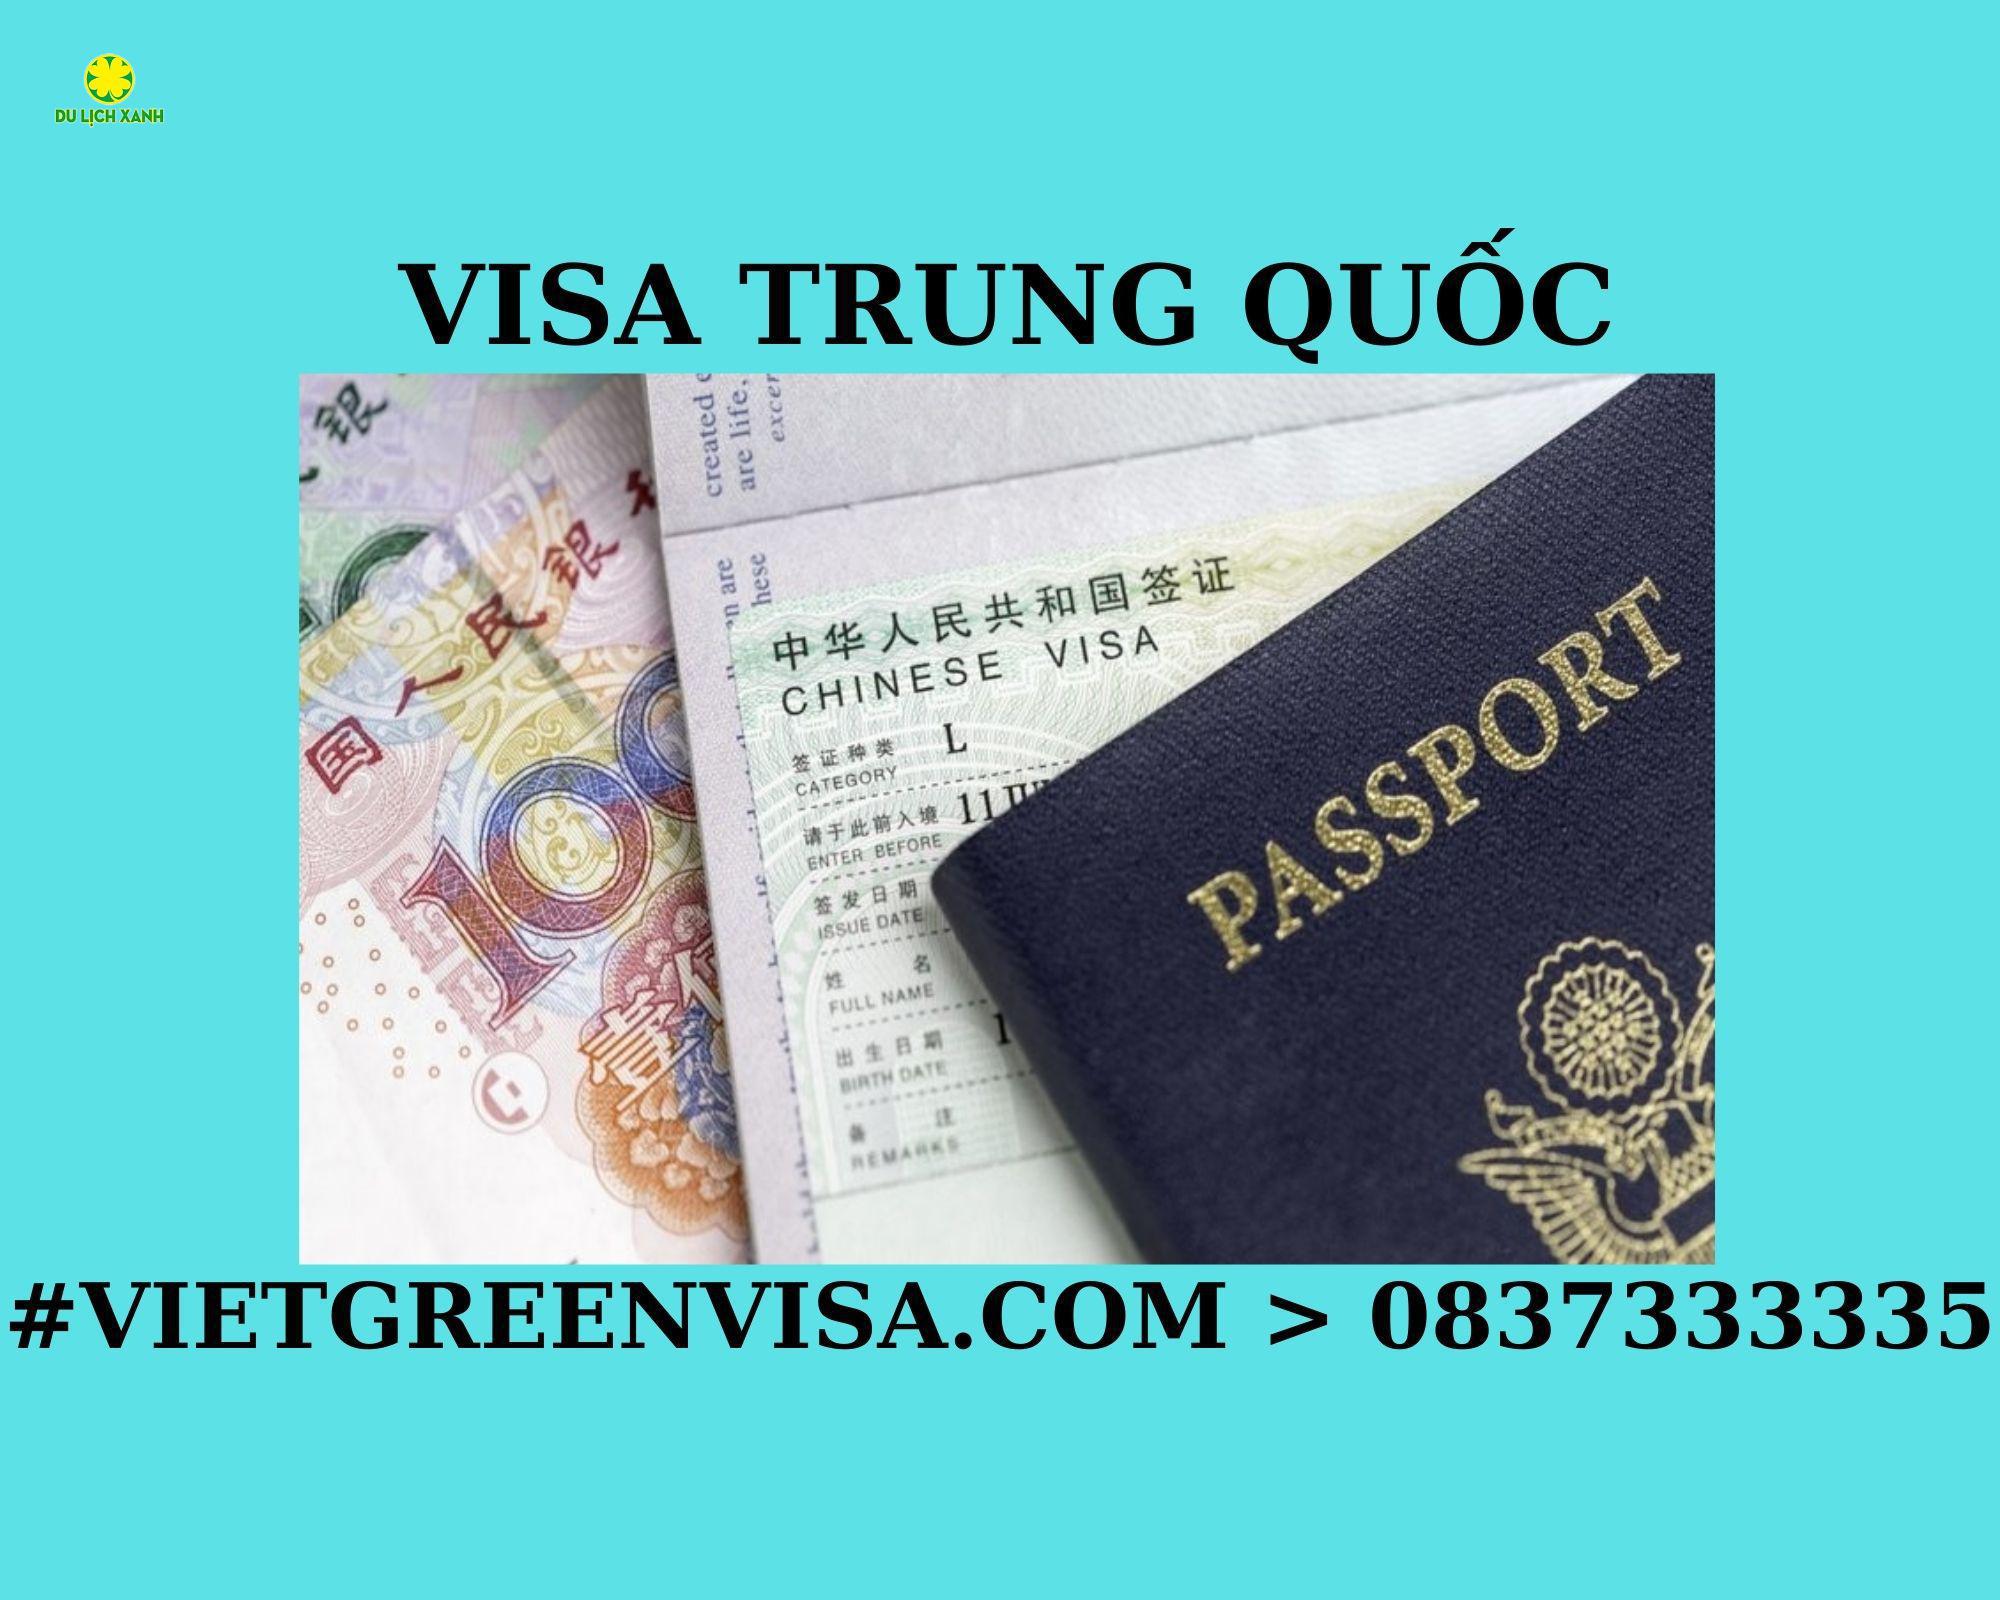 Dịch vụ xin Visa Trung Quốc trọn gói tại Hà Nội, Hồ Chí Minh